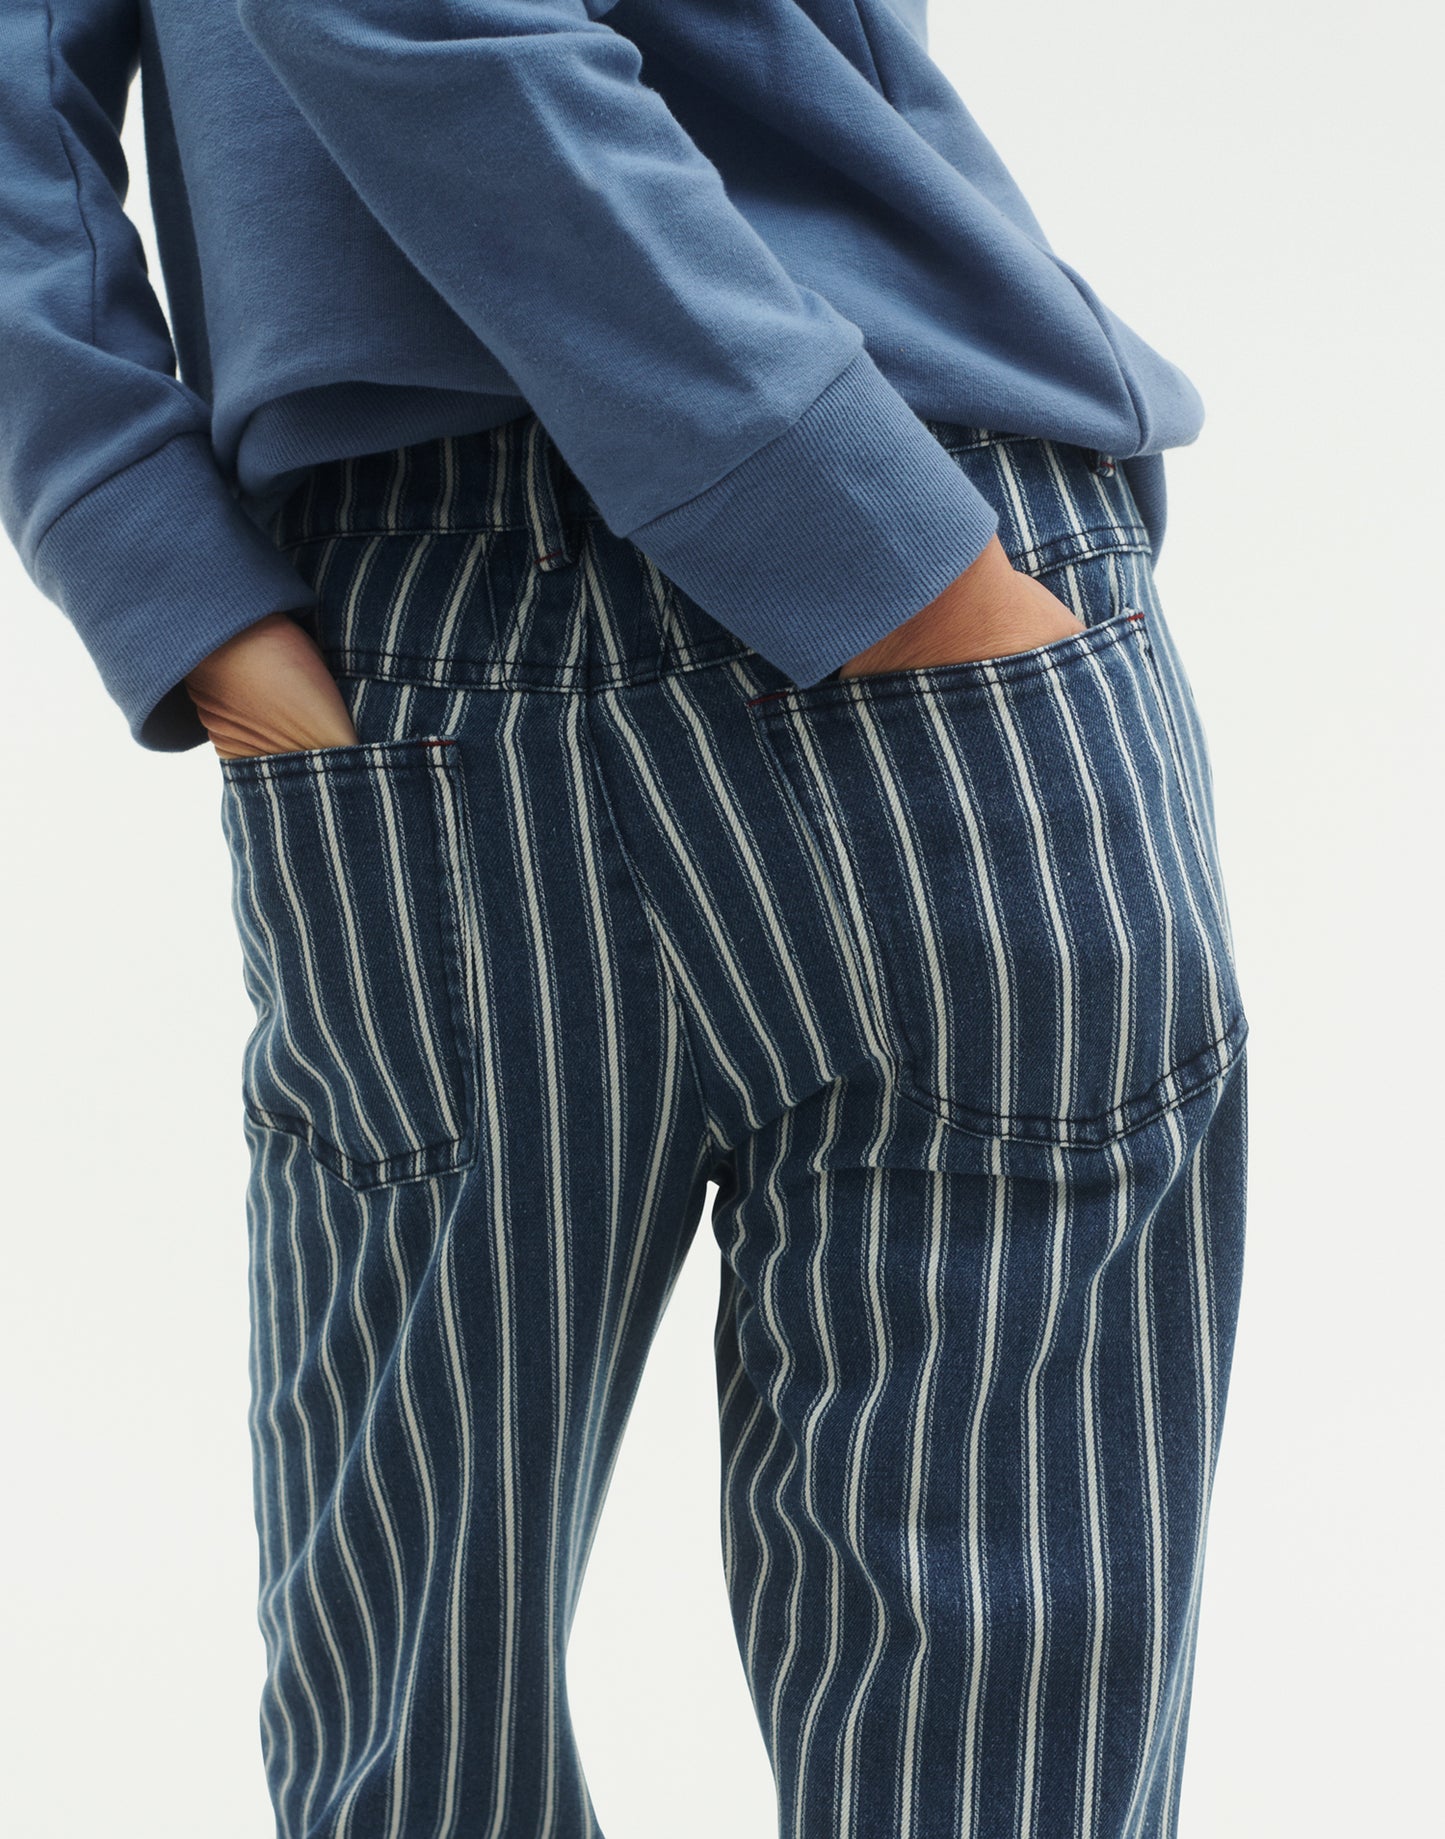 Stripes Pants